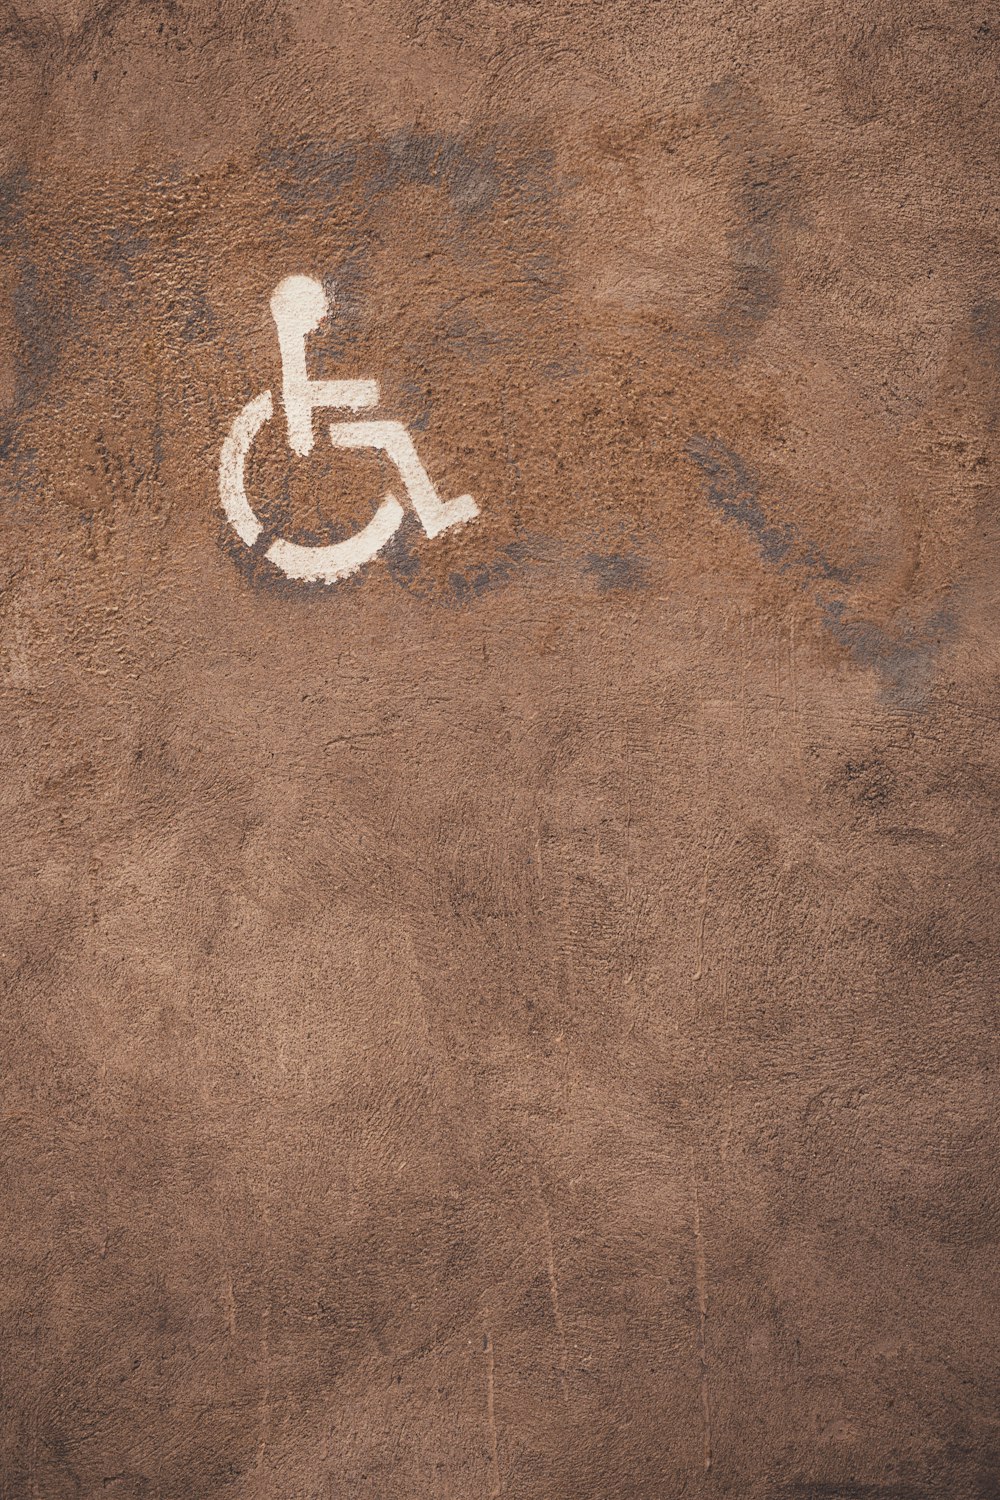 Una señal de discapacidad está pintada en el suelo